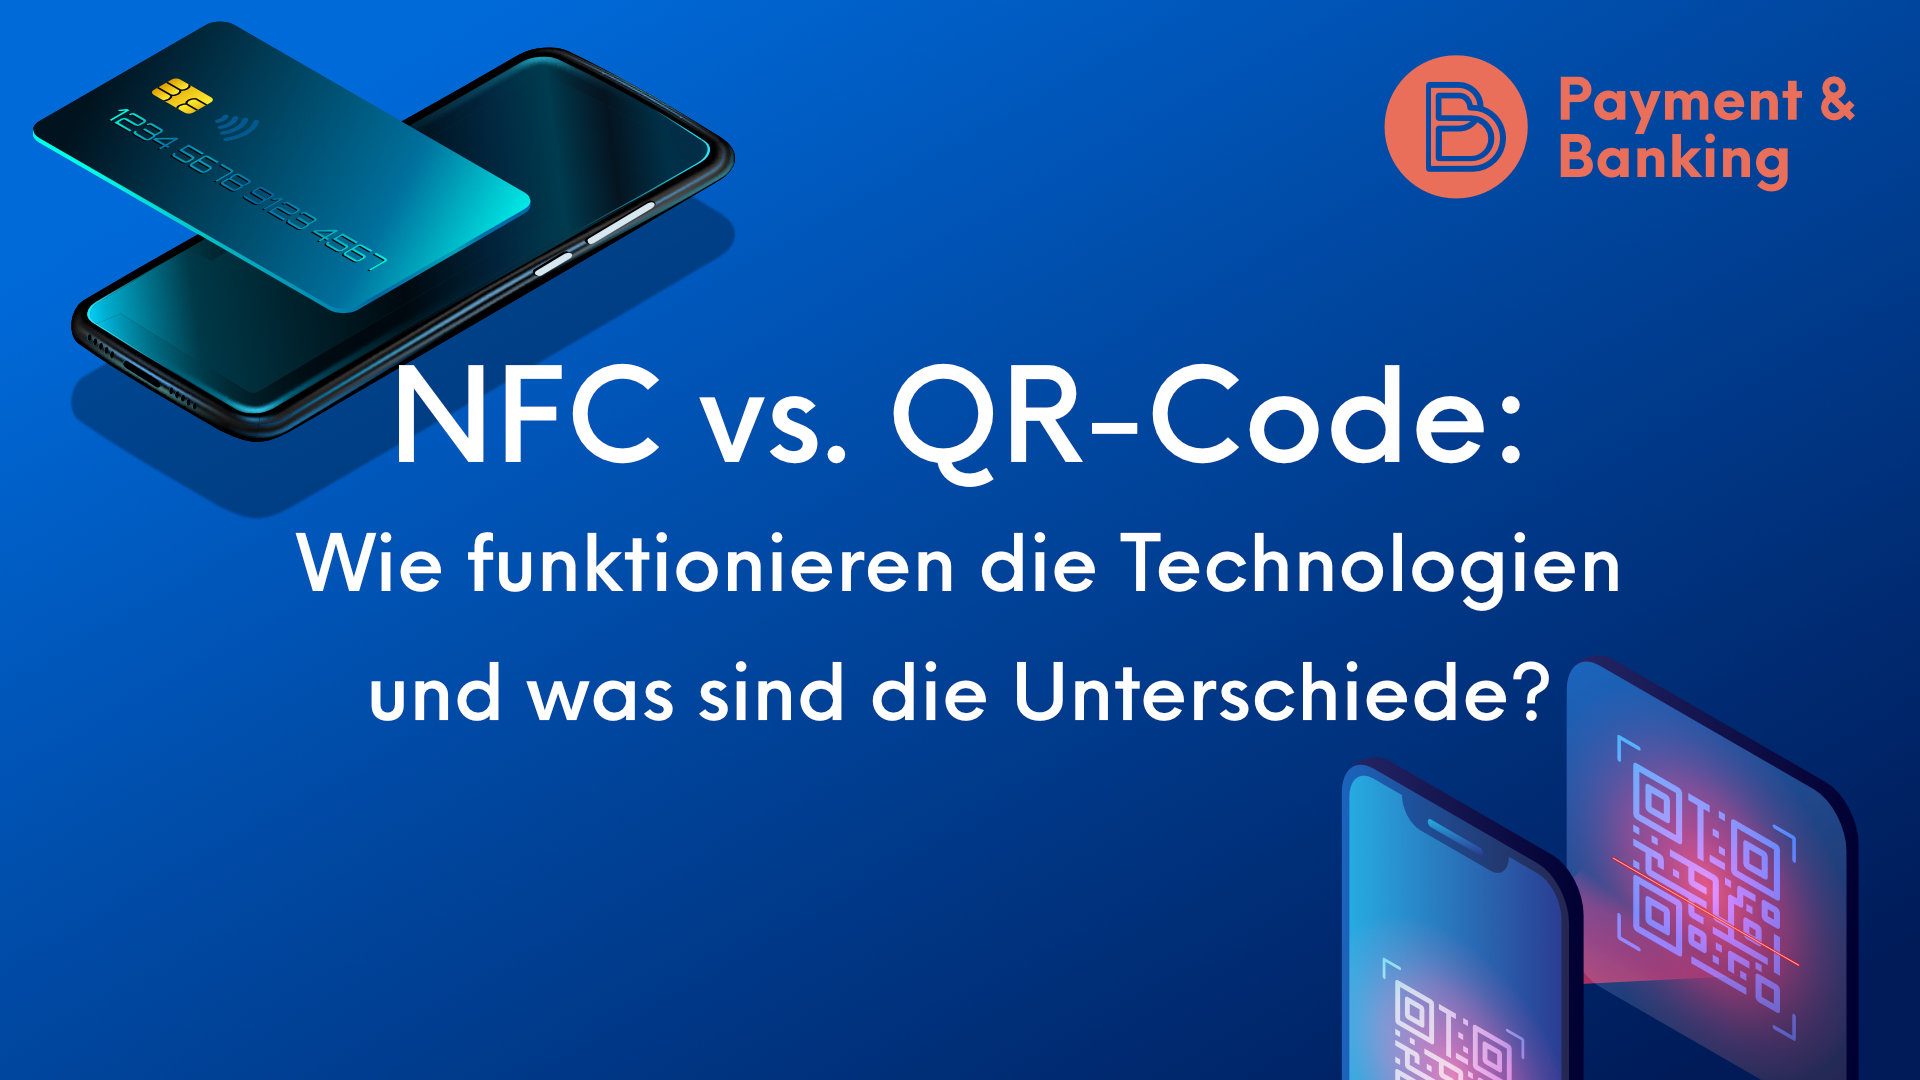 NFC vs. QR-Code: Wie funktionieren die Technologien und was sind die Unterschiede